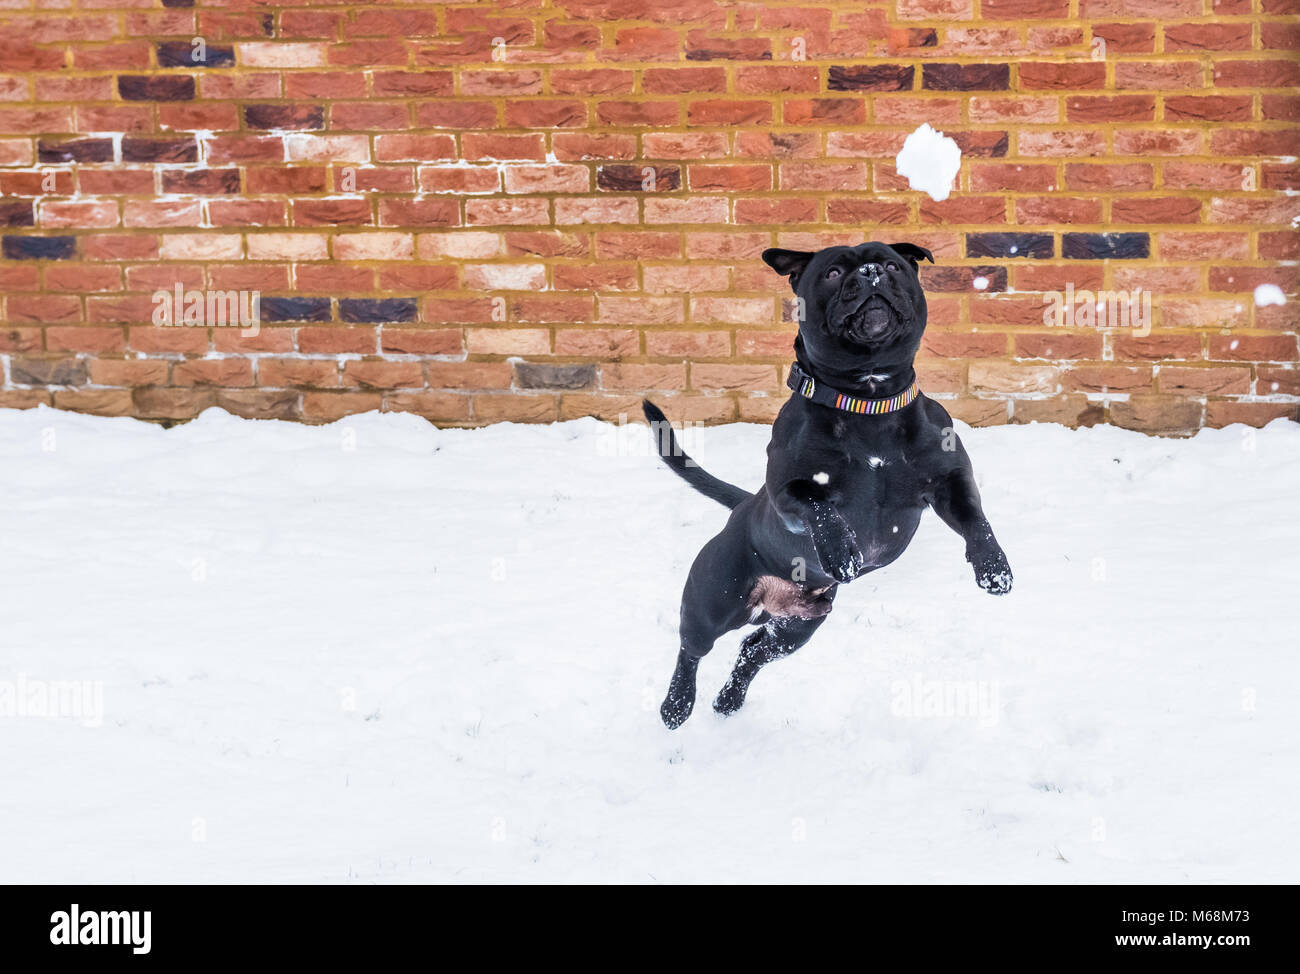 Staffordshire Bull Terrier Noir chien jouant dans la neige et de sauts pour une boule de neige en face d'un mur en briques rouges. Banque D'Images